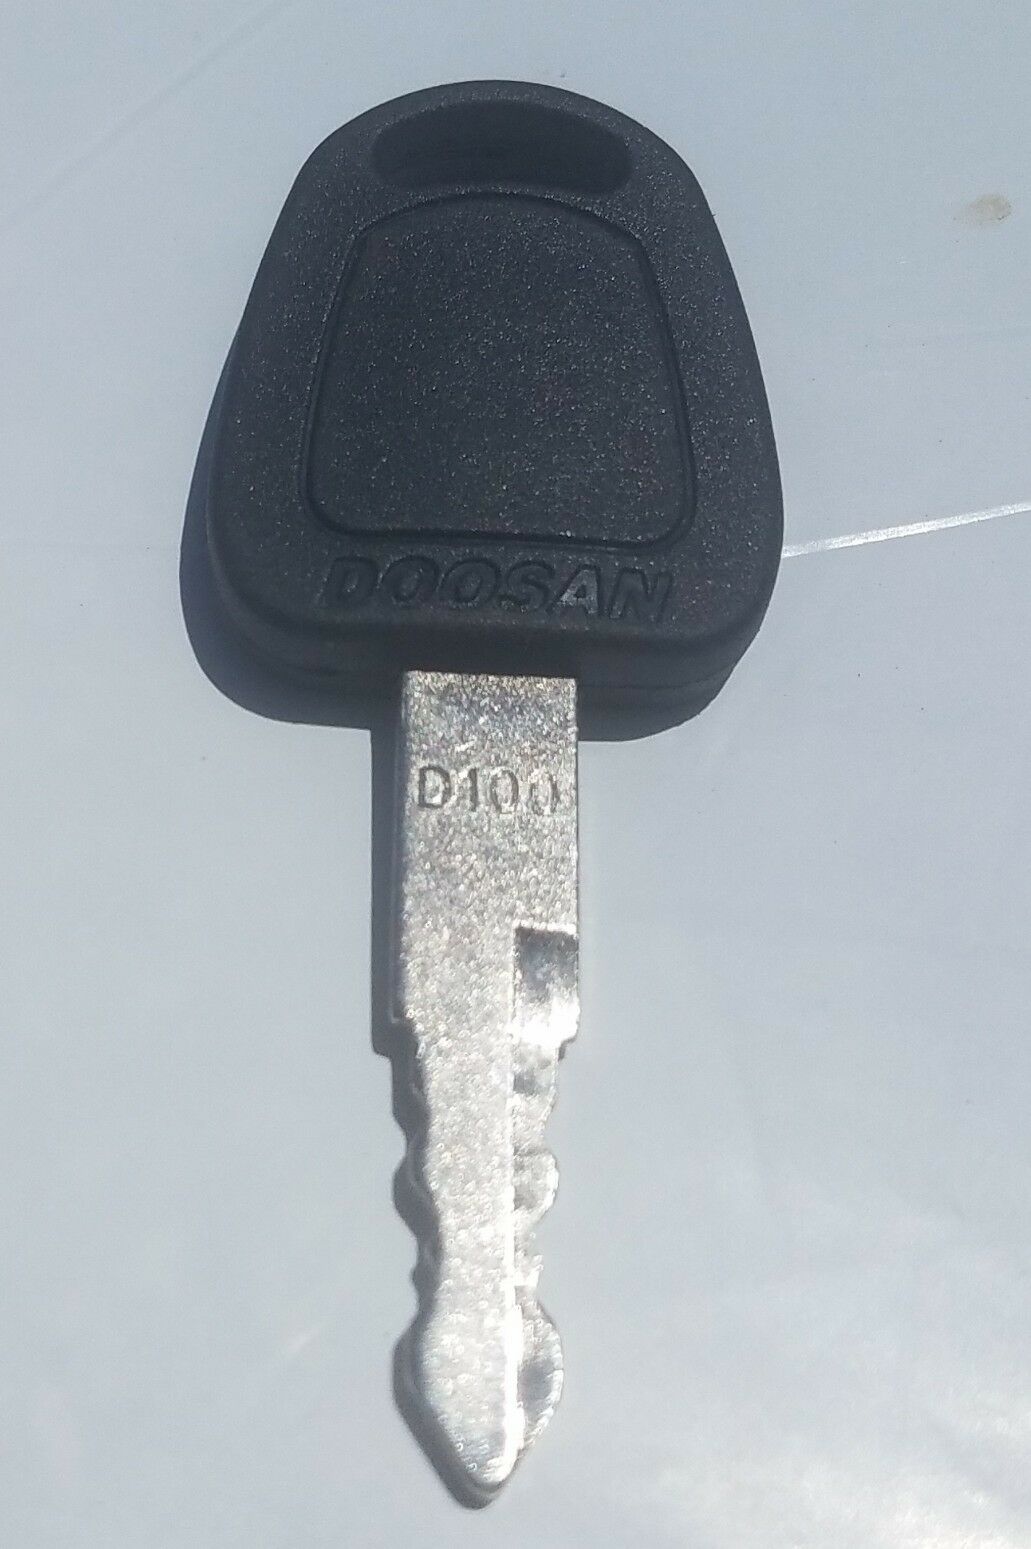 2pc nøgler til doosan daewoo terex bobcat  e80 e900 gravemaskine  # k1009605 d100